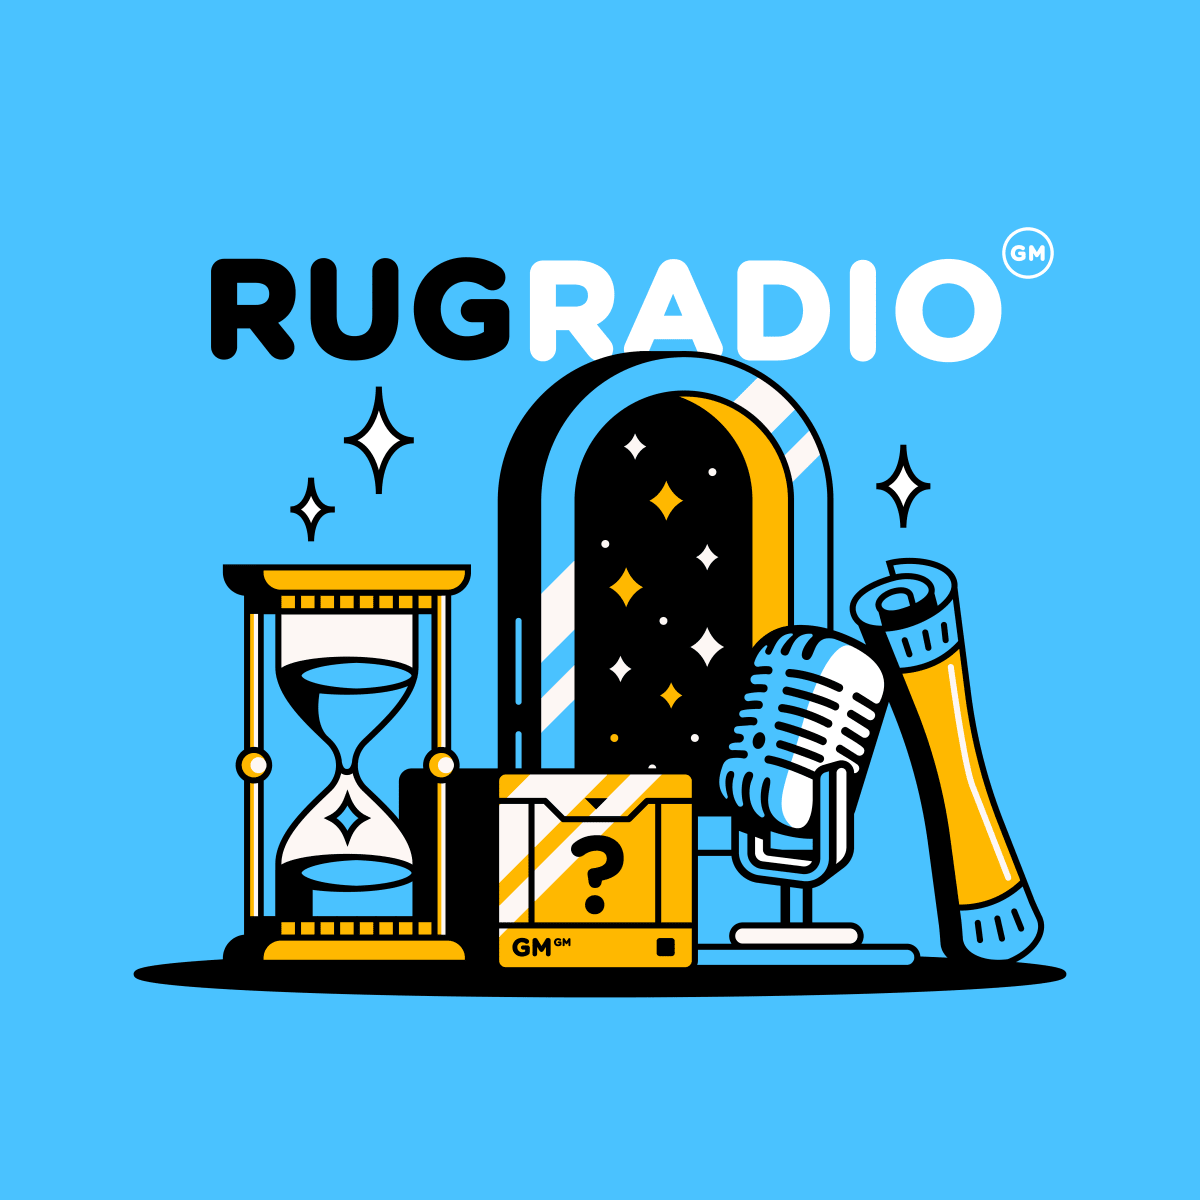 RugRadio Genesis - RugGenesis NFT | LooksRare